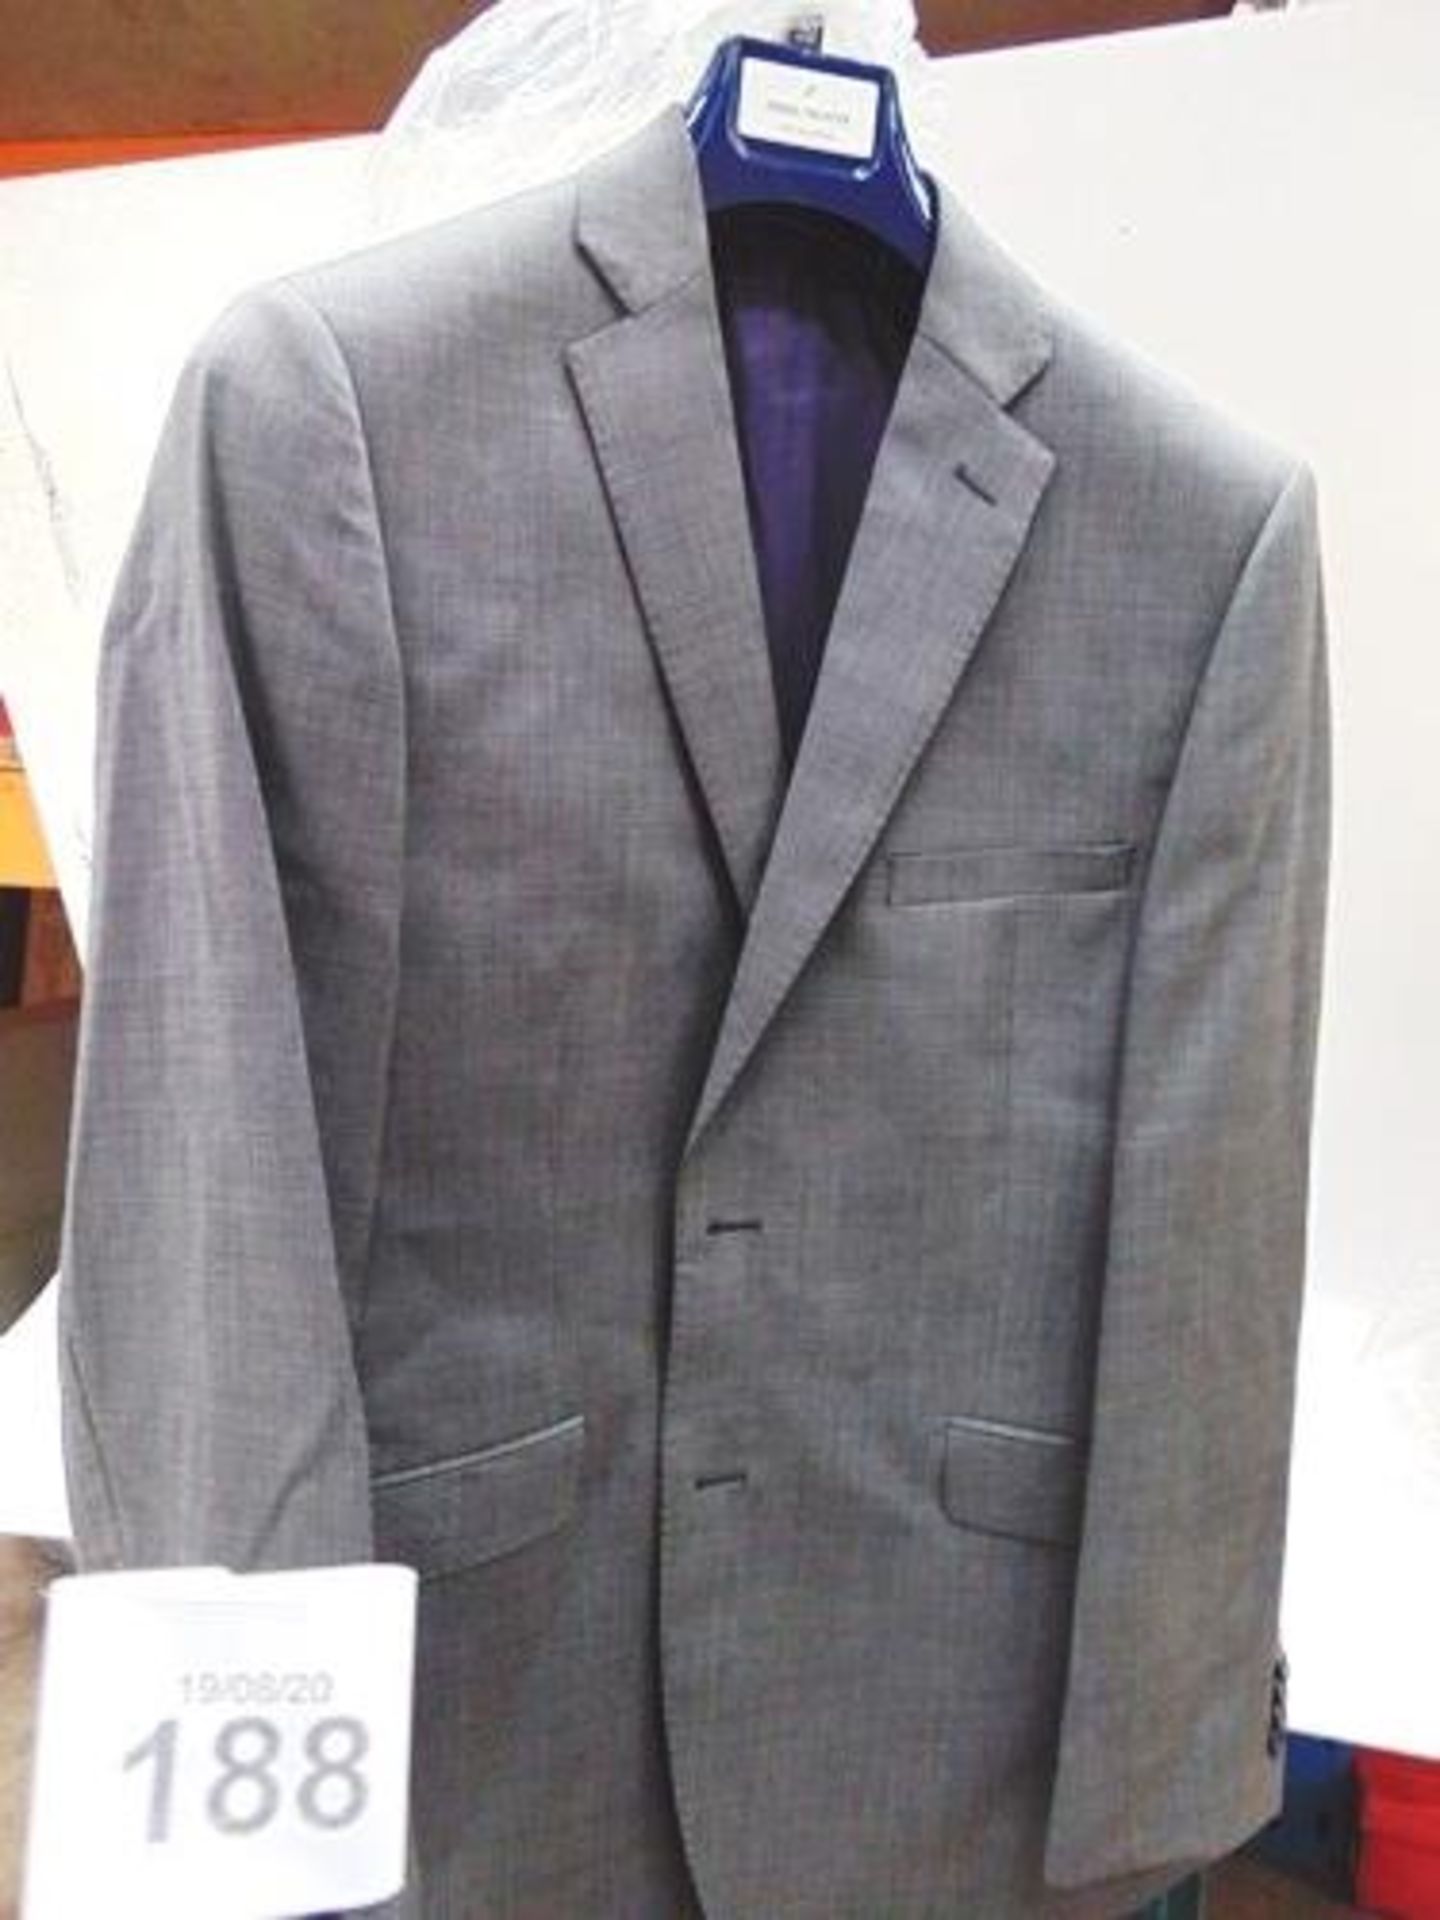 5 x Daniel Hechter travel suits, grey birdseye colour, 2 x size 40S, 1 x size 40R, 1 x size 40L